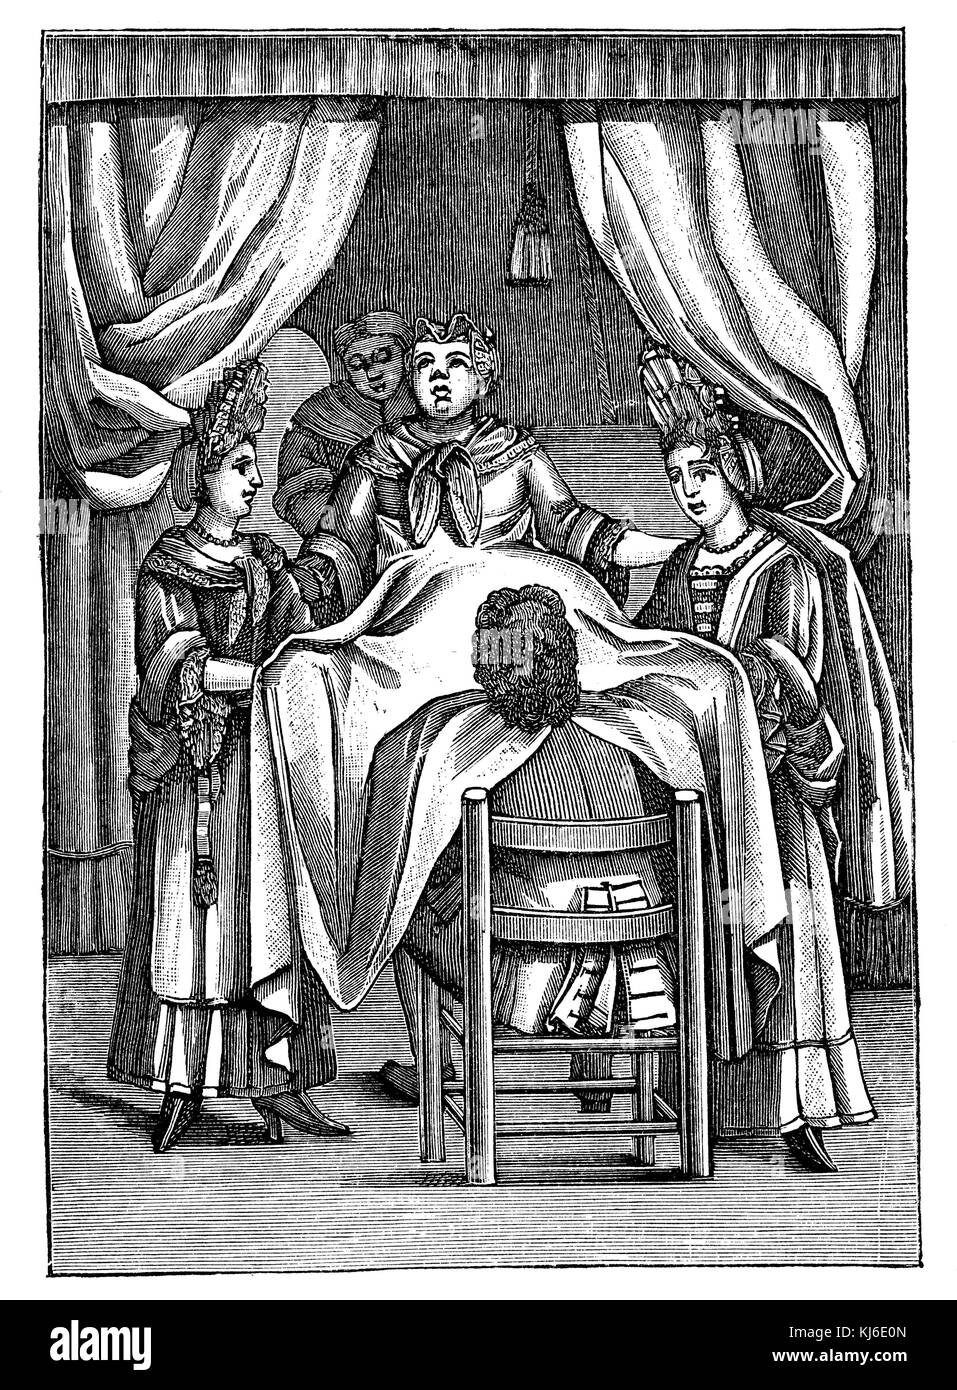 Ostetrica olandese del 17 ° secolo, lavorando sotto una donna coperta. Dopo Samuel Janson (Holländischer Geburtshelfer des 17. Jahrhunderts, unter einem Laken eine Frau entbindend. Nach Samuel Janson) Foto Stock